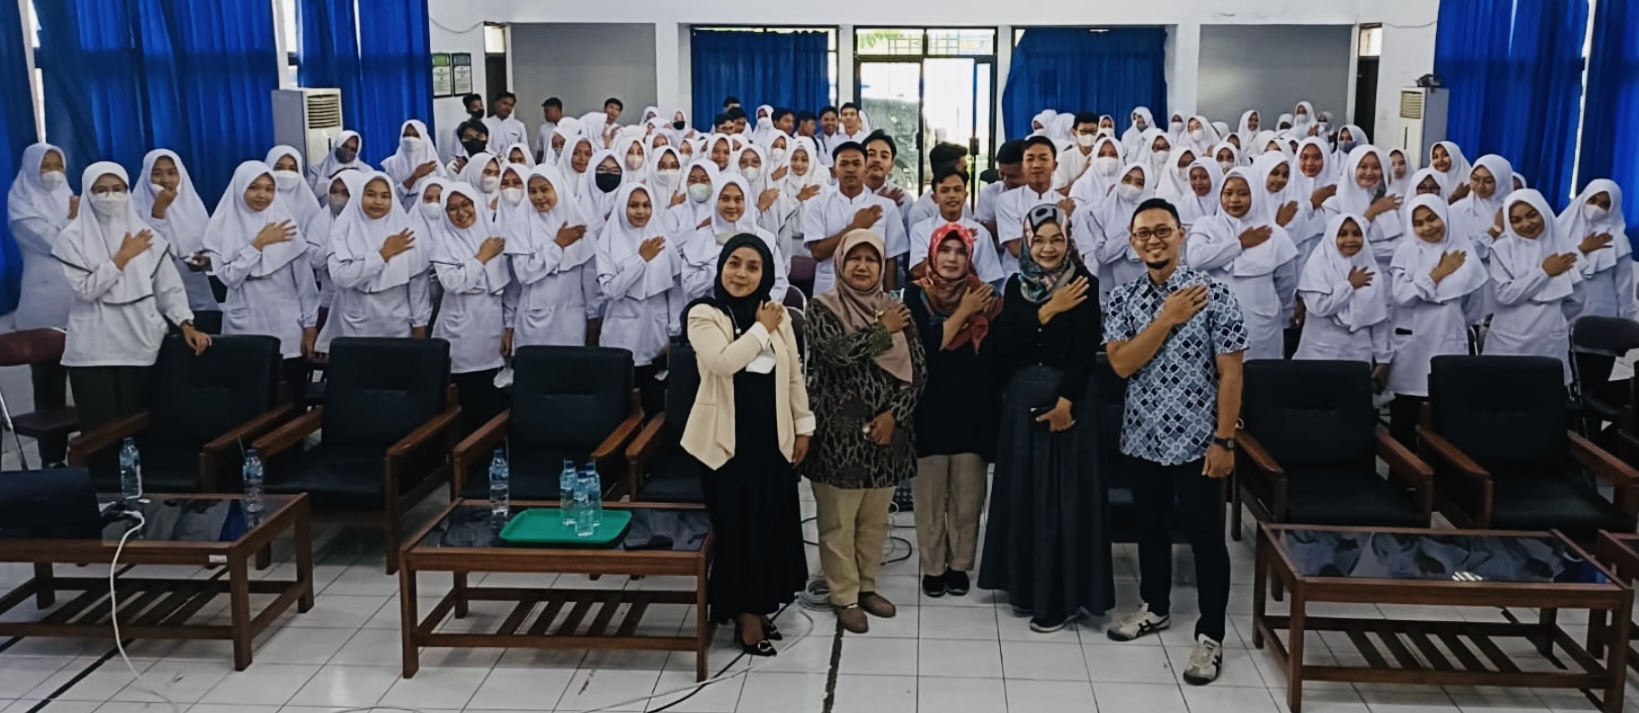 Kolaborasi Poltekkes Kemenkes dan RSI Hj. Siti Muniroh, Meningkatkan Pengetahuan Mahasiswa Tentang Hepatitis